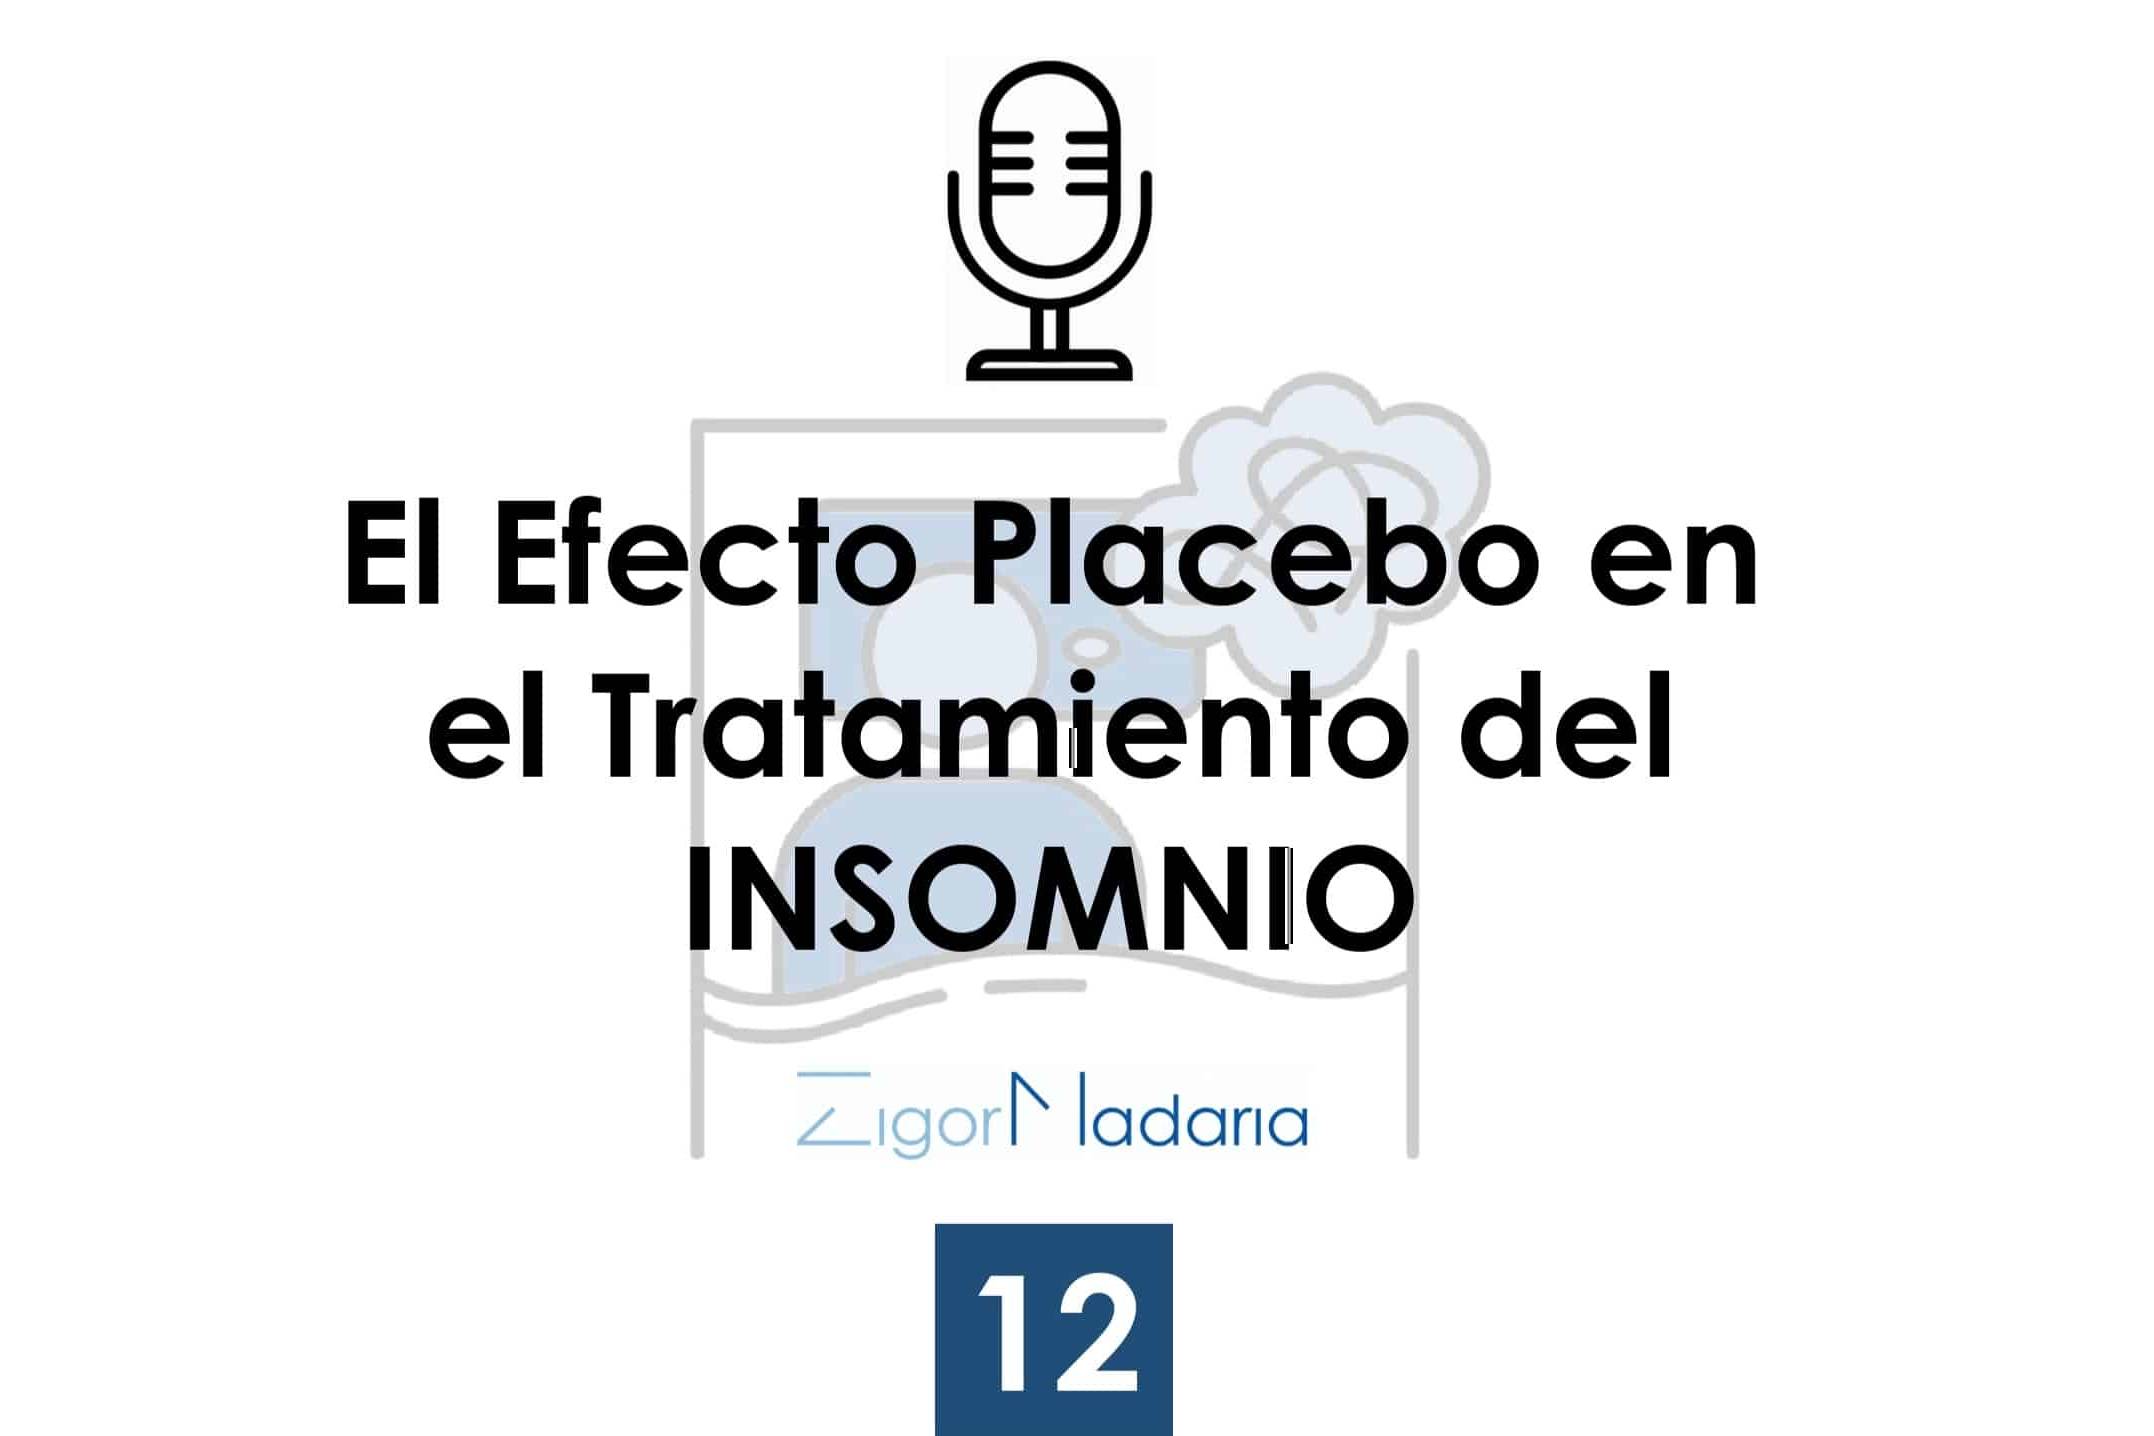 El efecto placebo en el tratamiento del insomnio